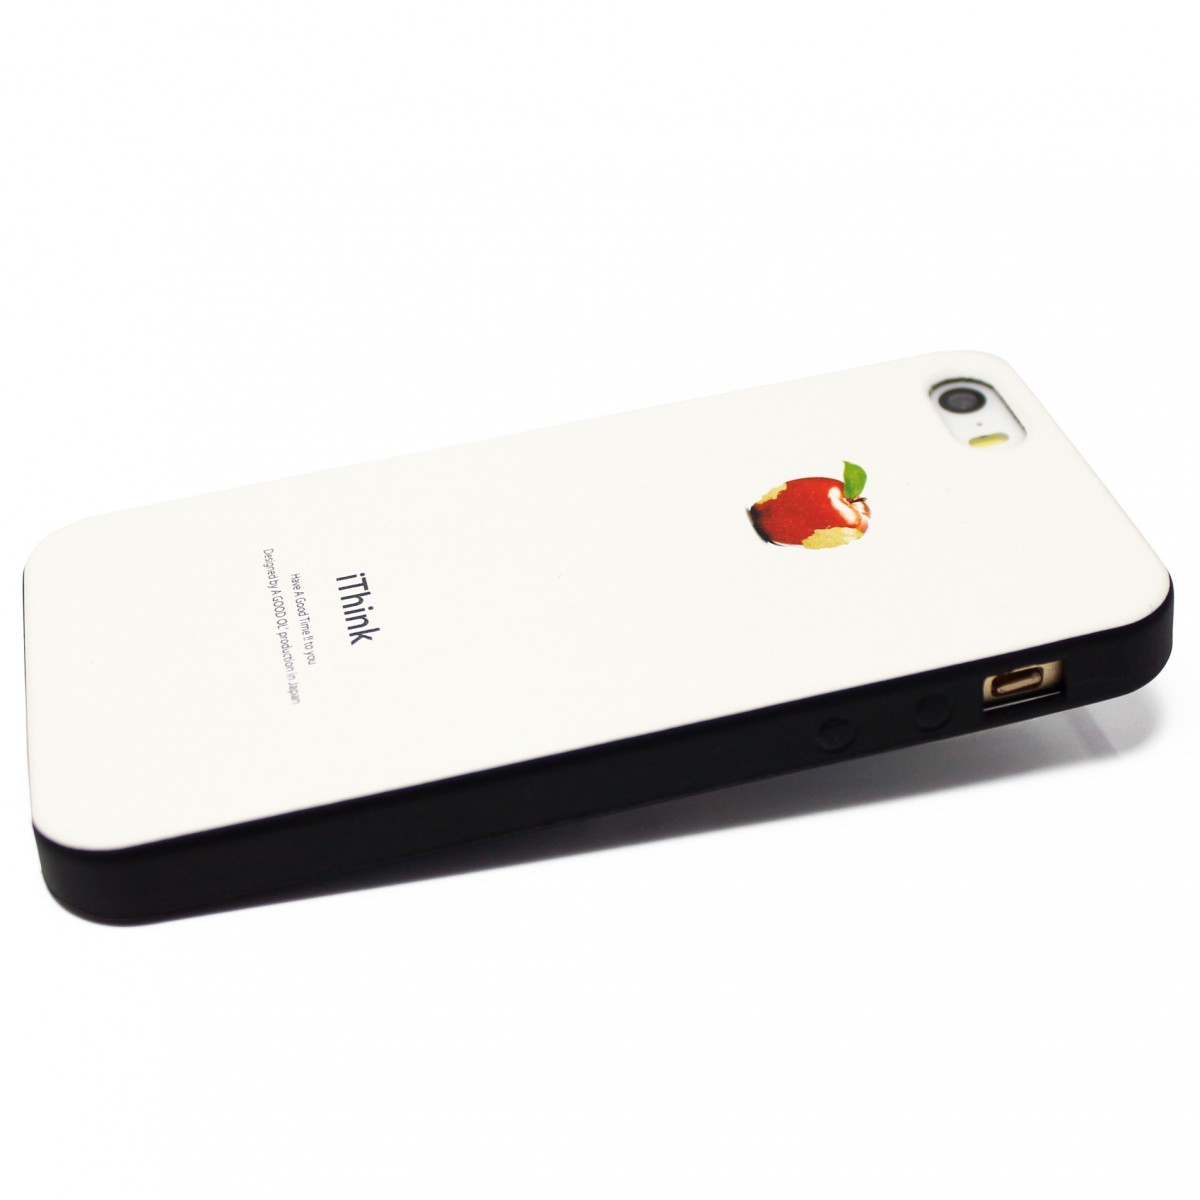 Iphone5 Iphone5s用 Iphonese 軽量レザーケース オフホワイト ブラック Apple アップル Iichi ハンドメイド クラフト作品 手仕事品の通販